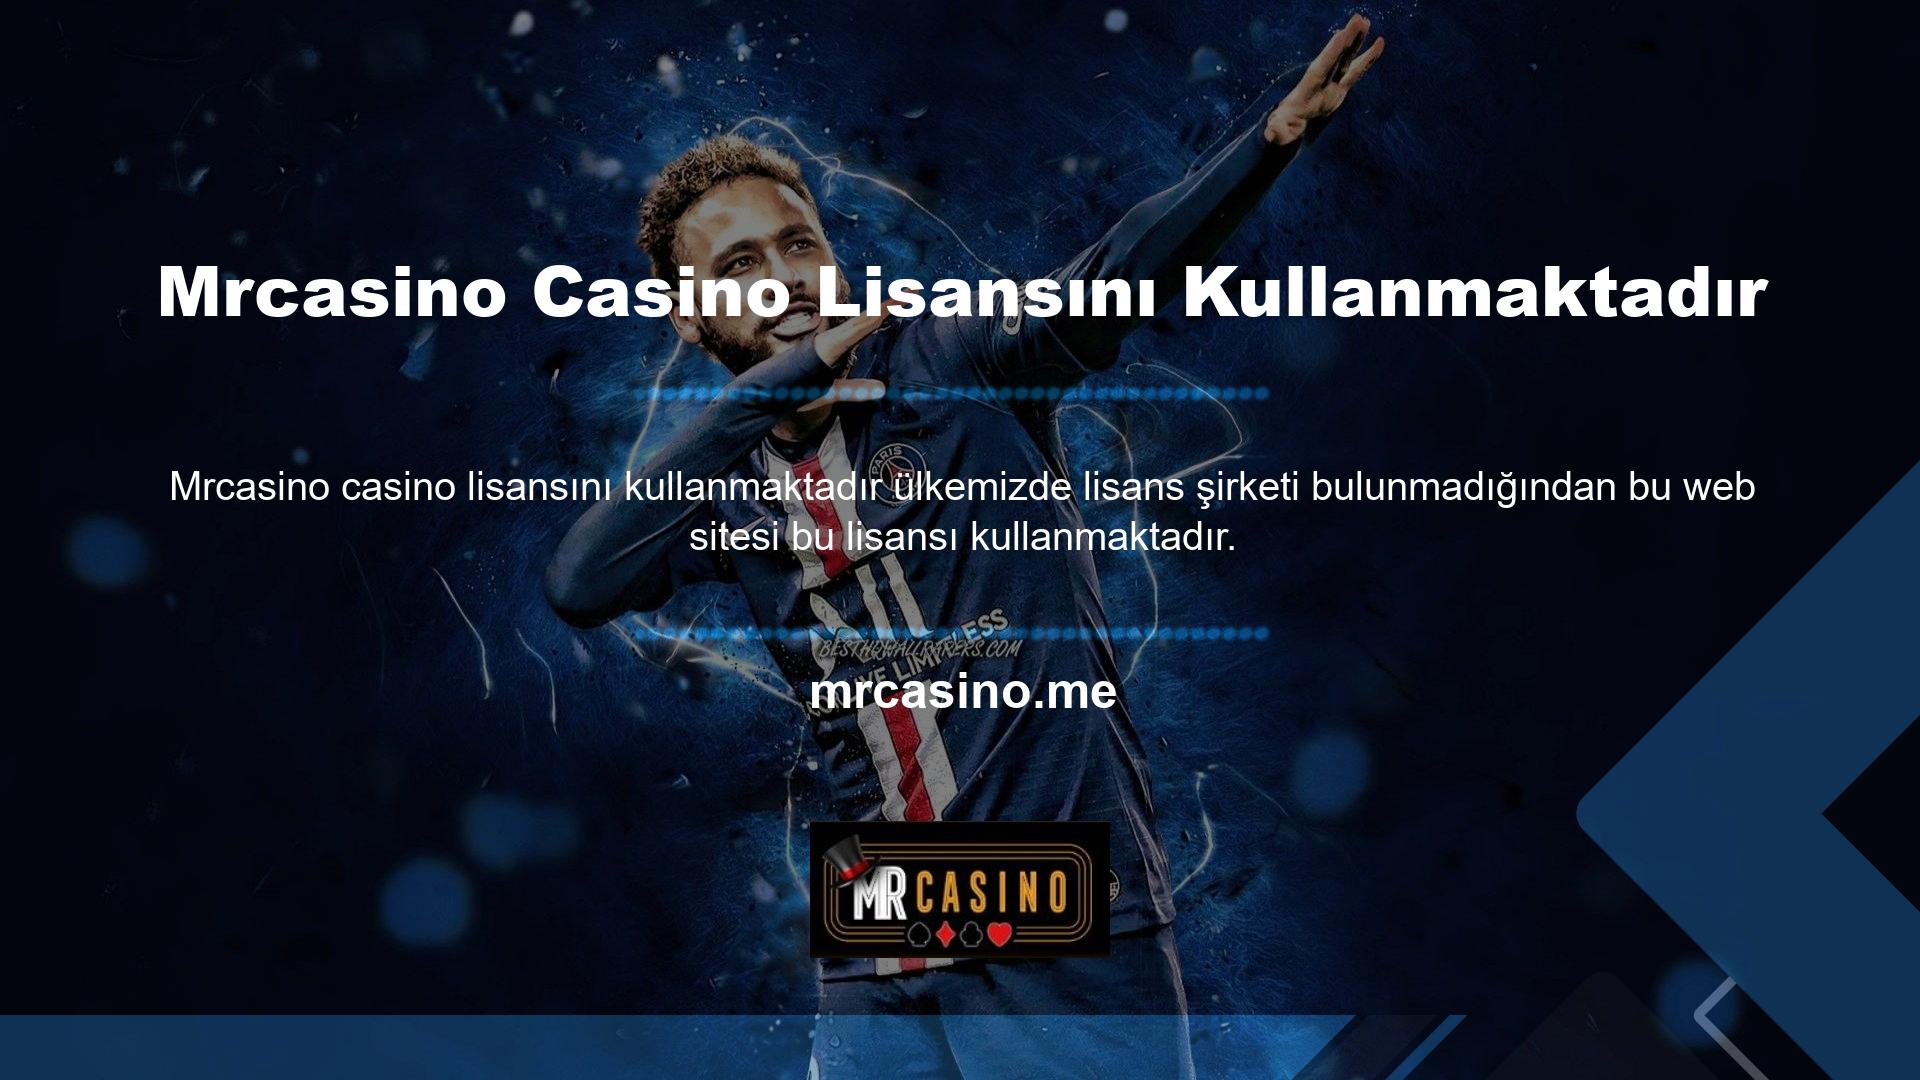 Mrcasino web sitesi tüm oyun ve hizmetlerin lisanslanmasını düzenler